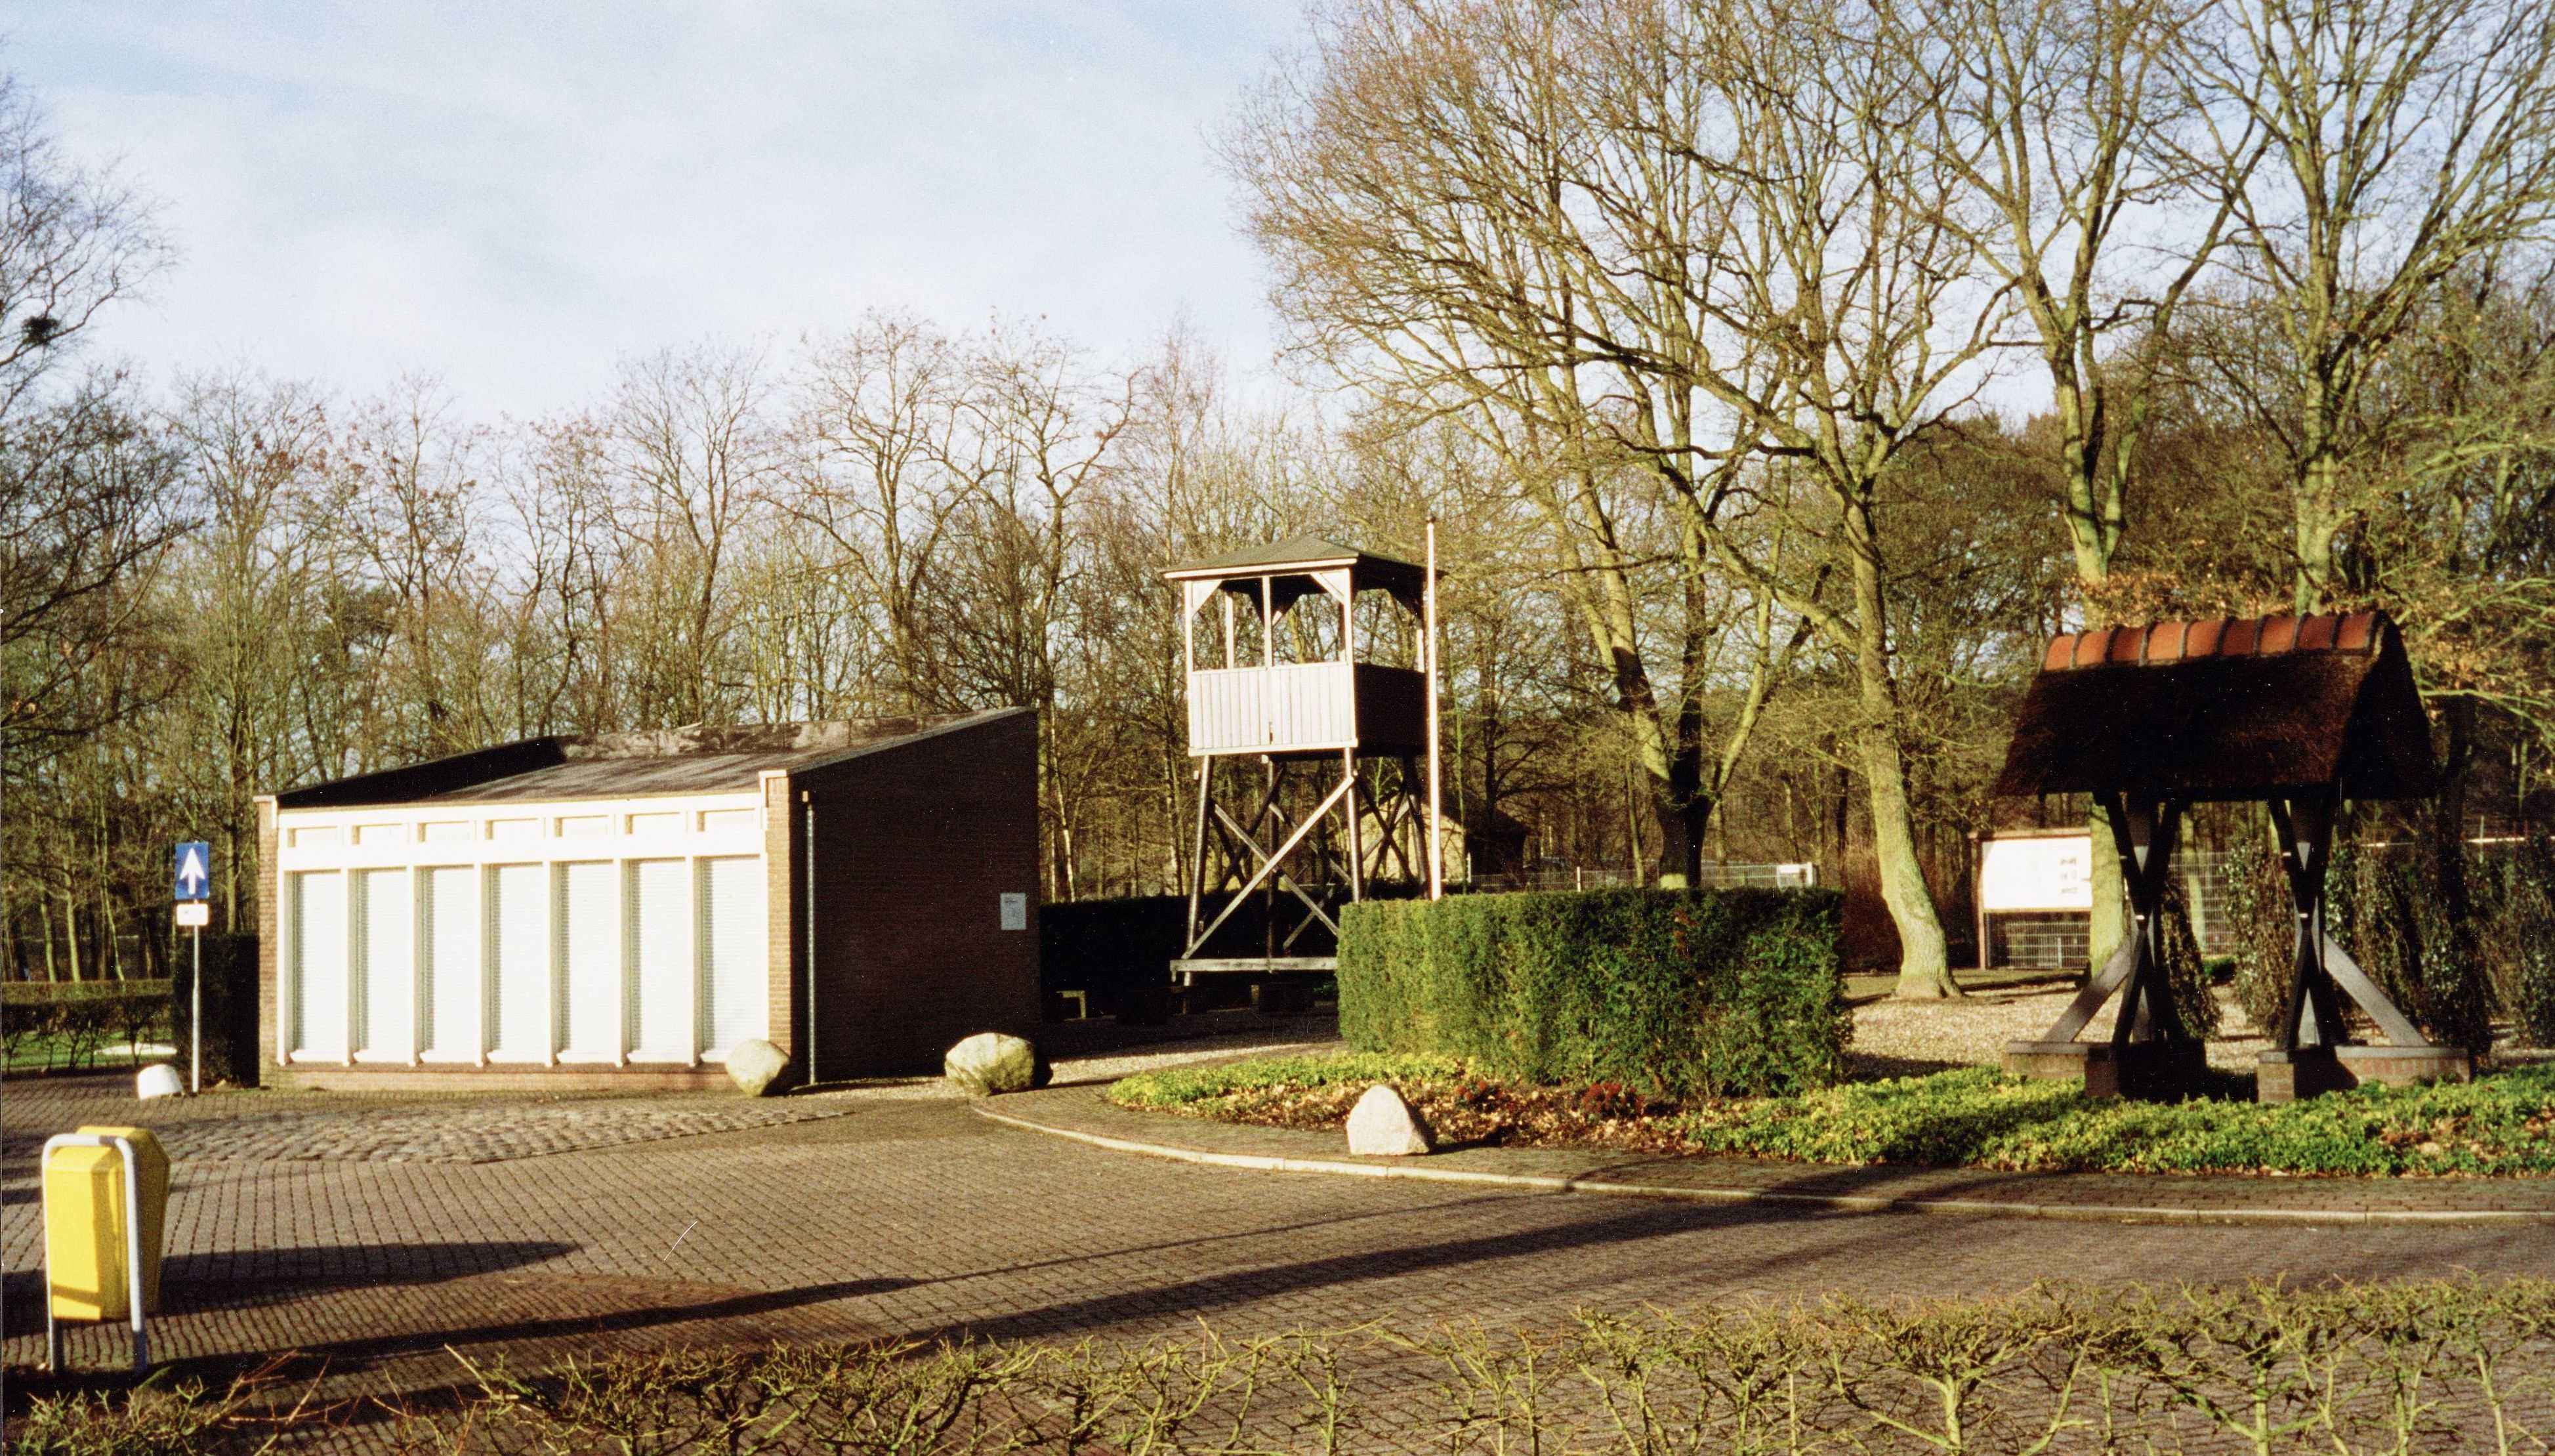 Gedenkplaats van Kamp Amersfoort, met klokketoren en wachttoren. Appelweg in Leusden. 